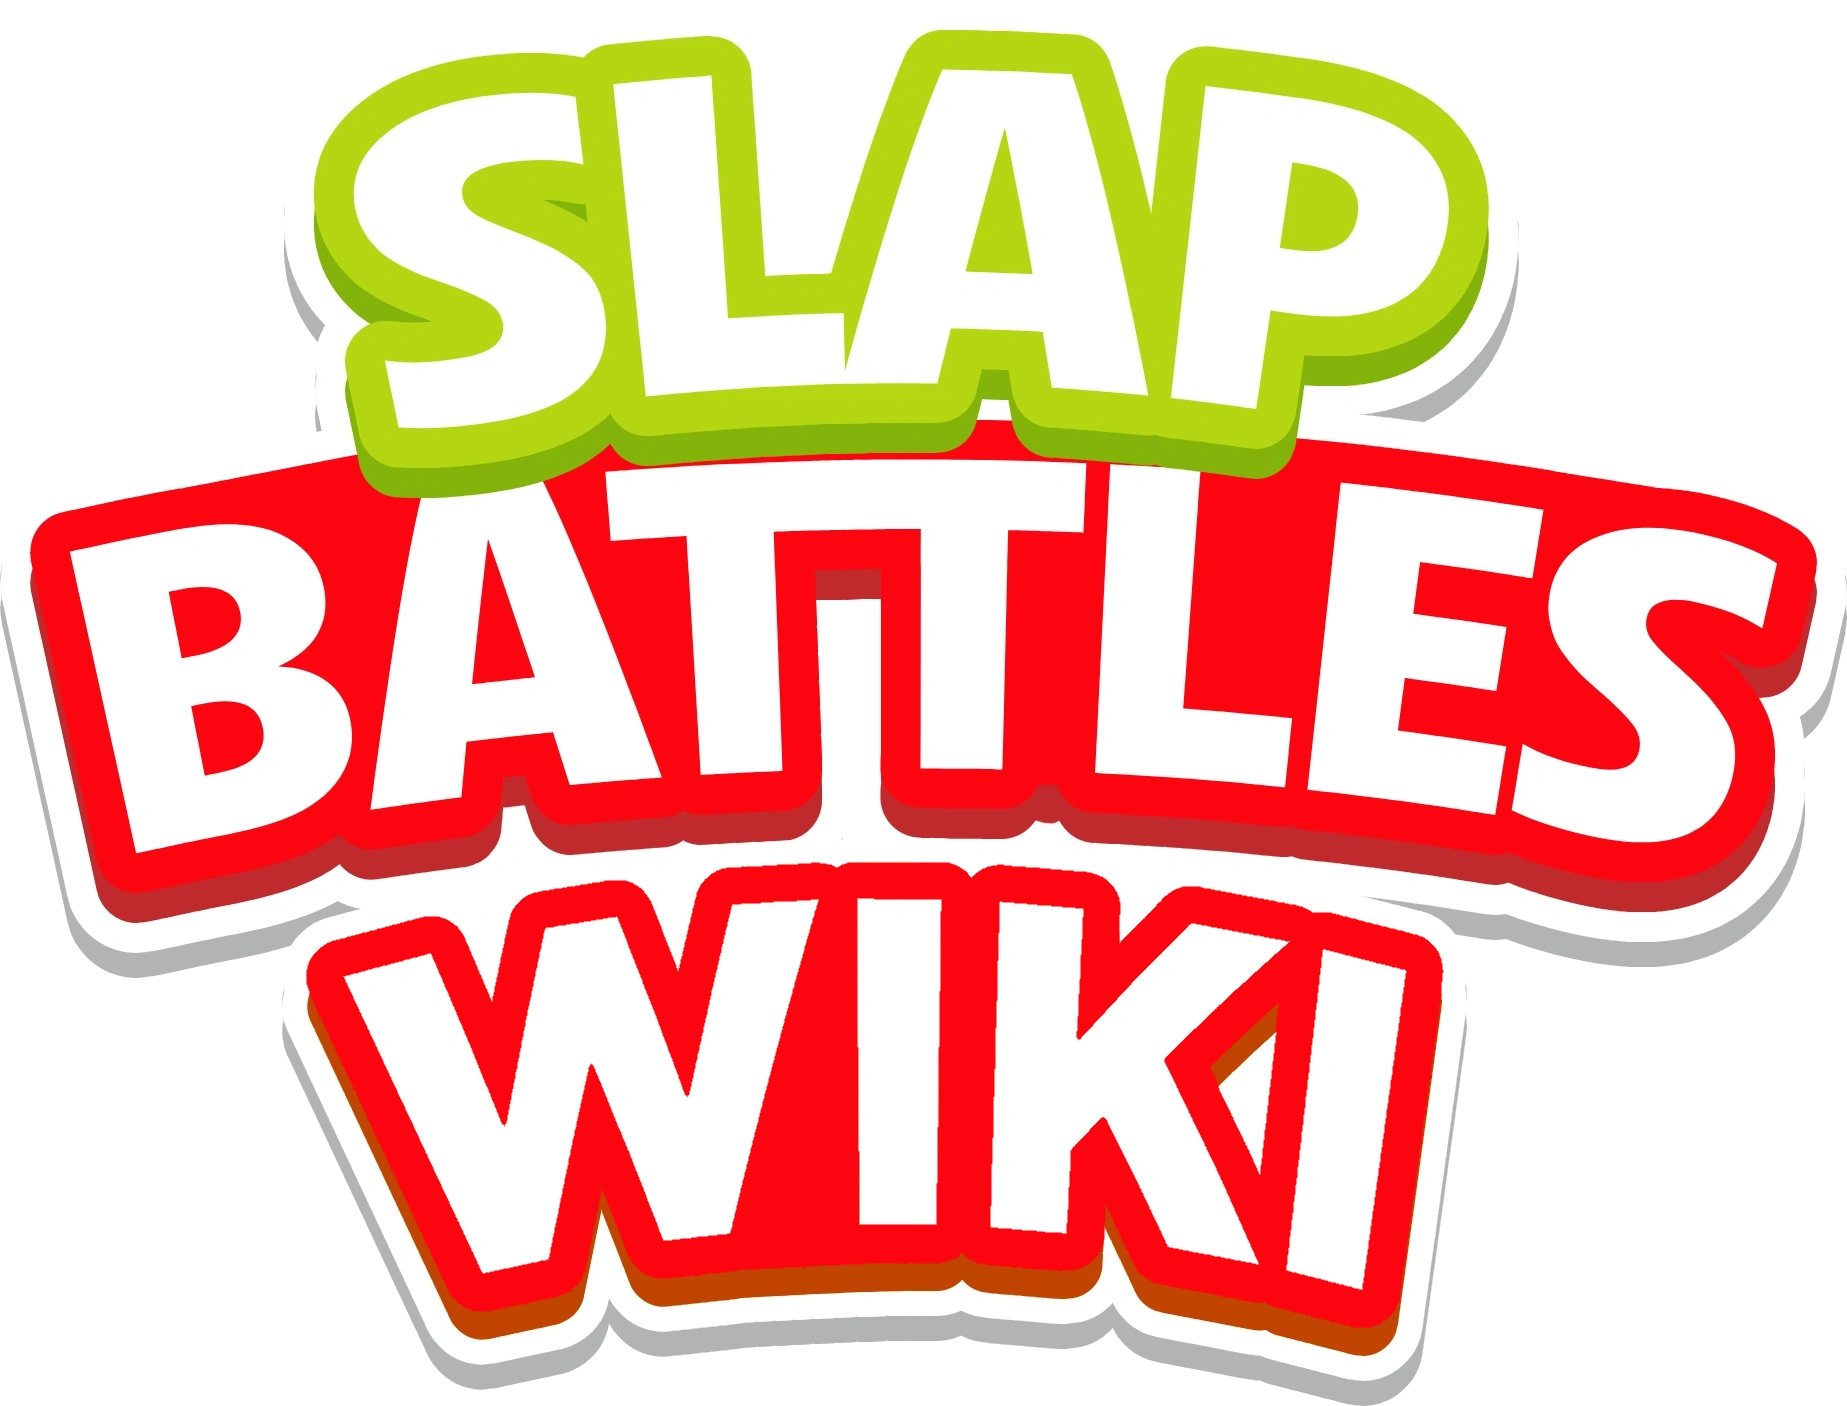 Golden, Slap Battles Wiki